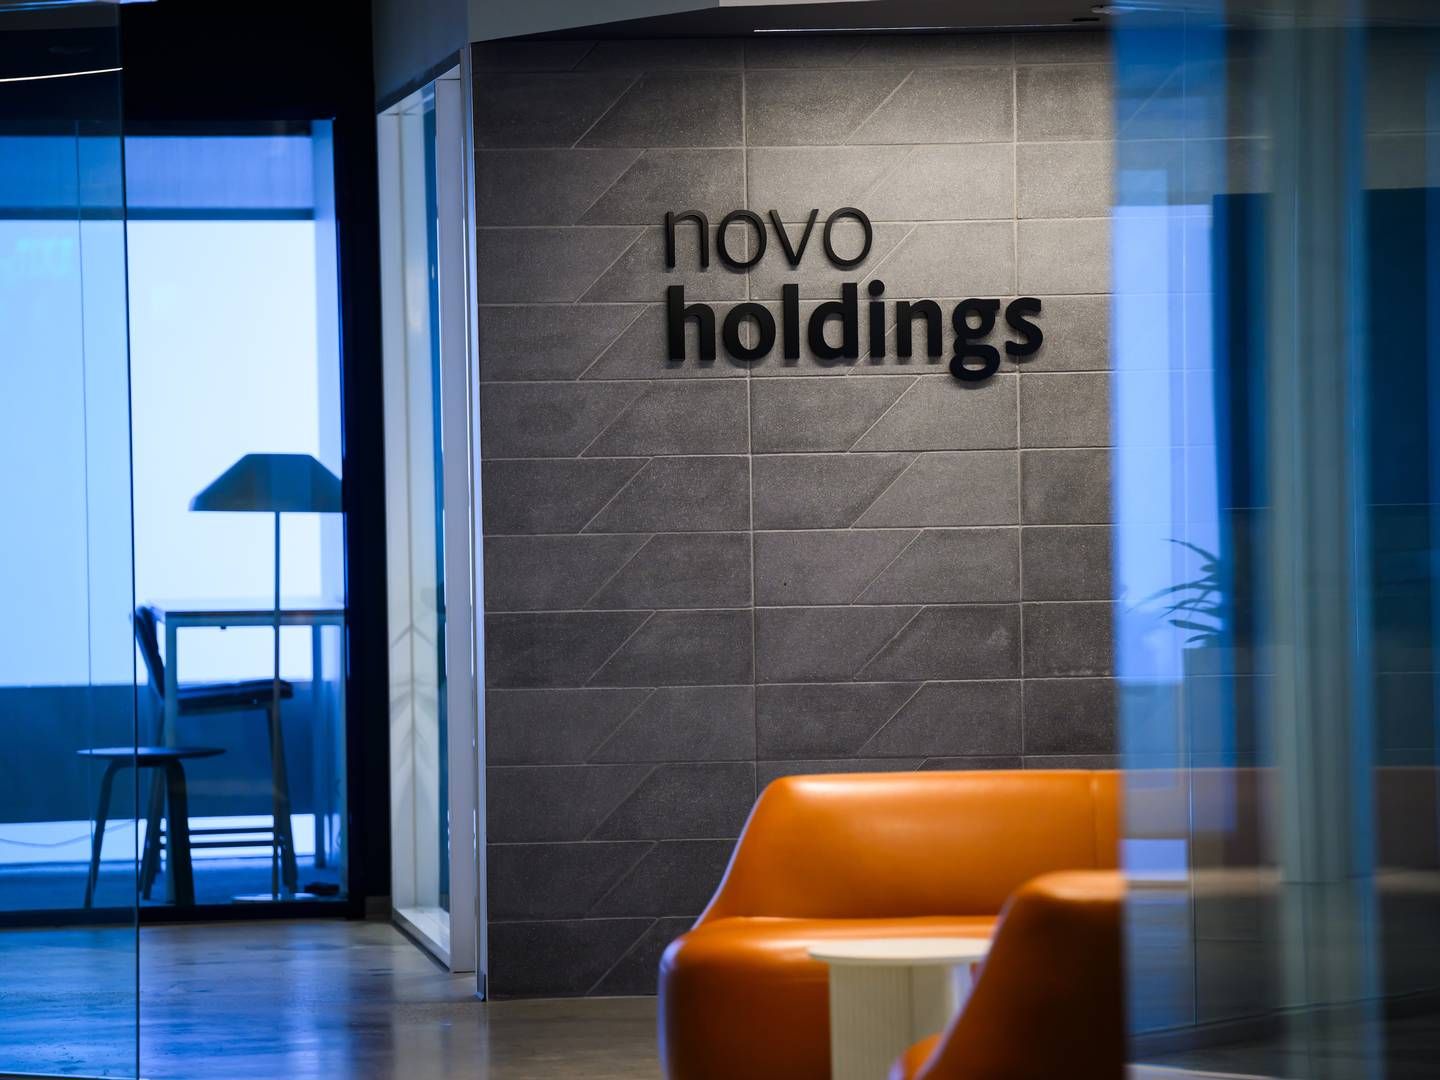 Foto: Novo Holdings / Pr